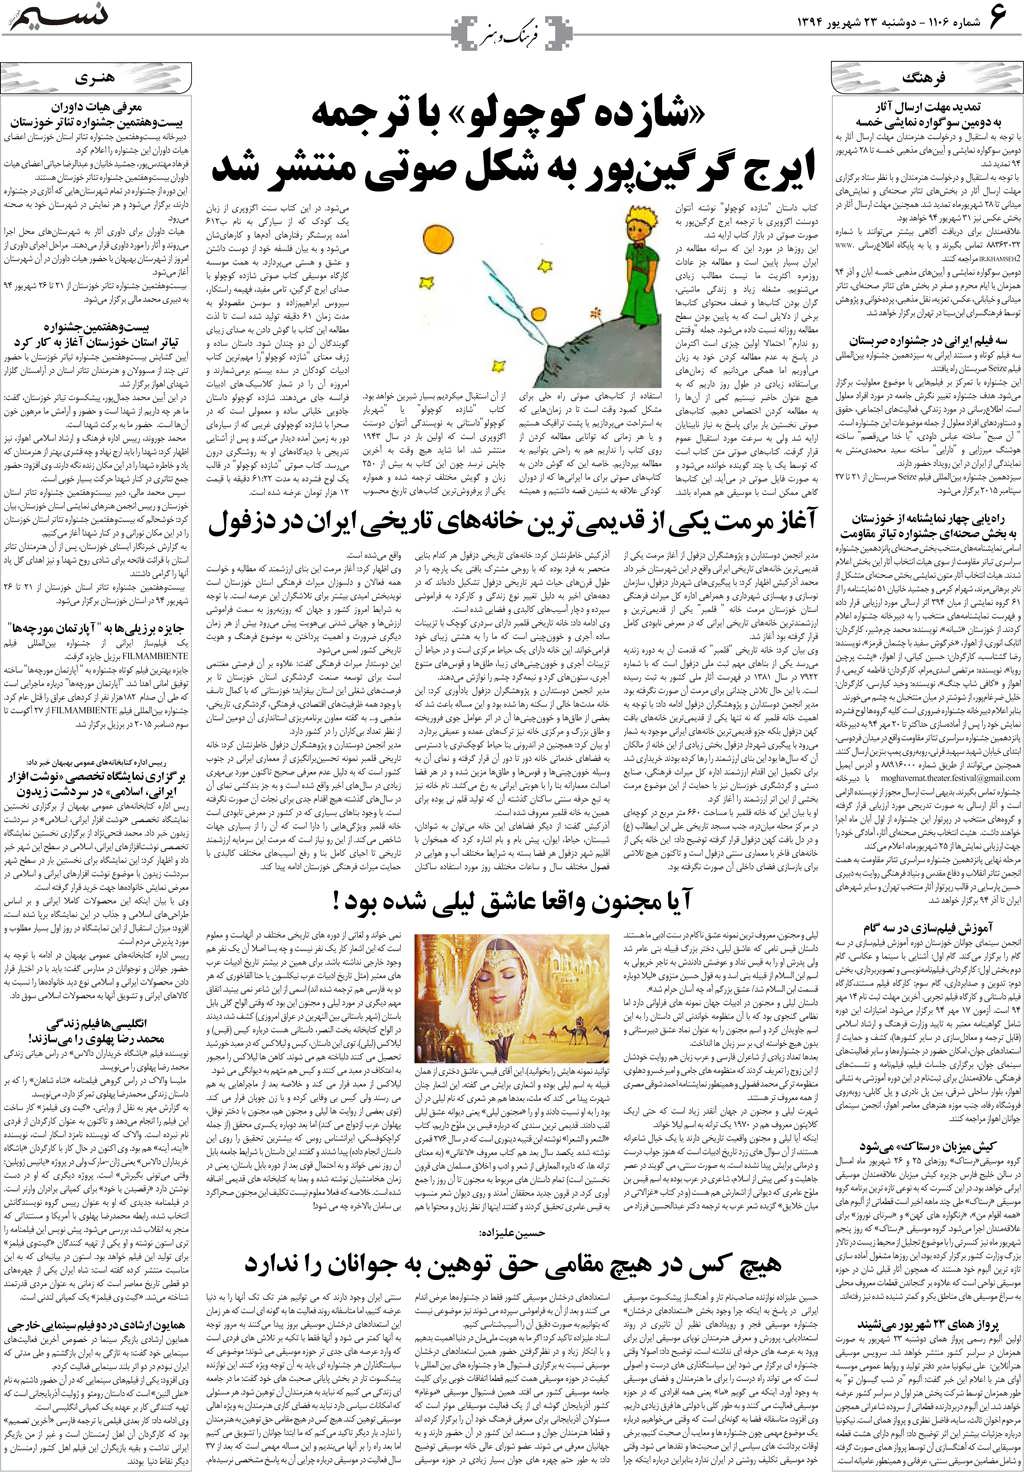 صفحه فرهنگ و هنر روزنامه نسیم شماره 1106